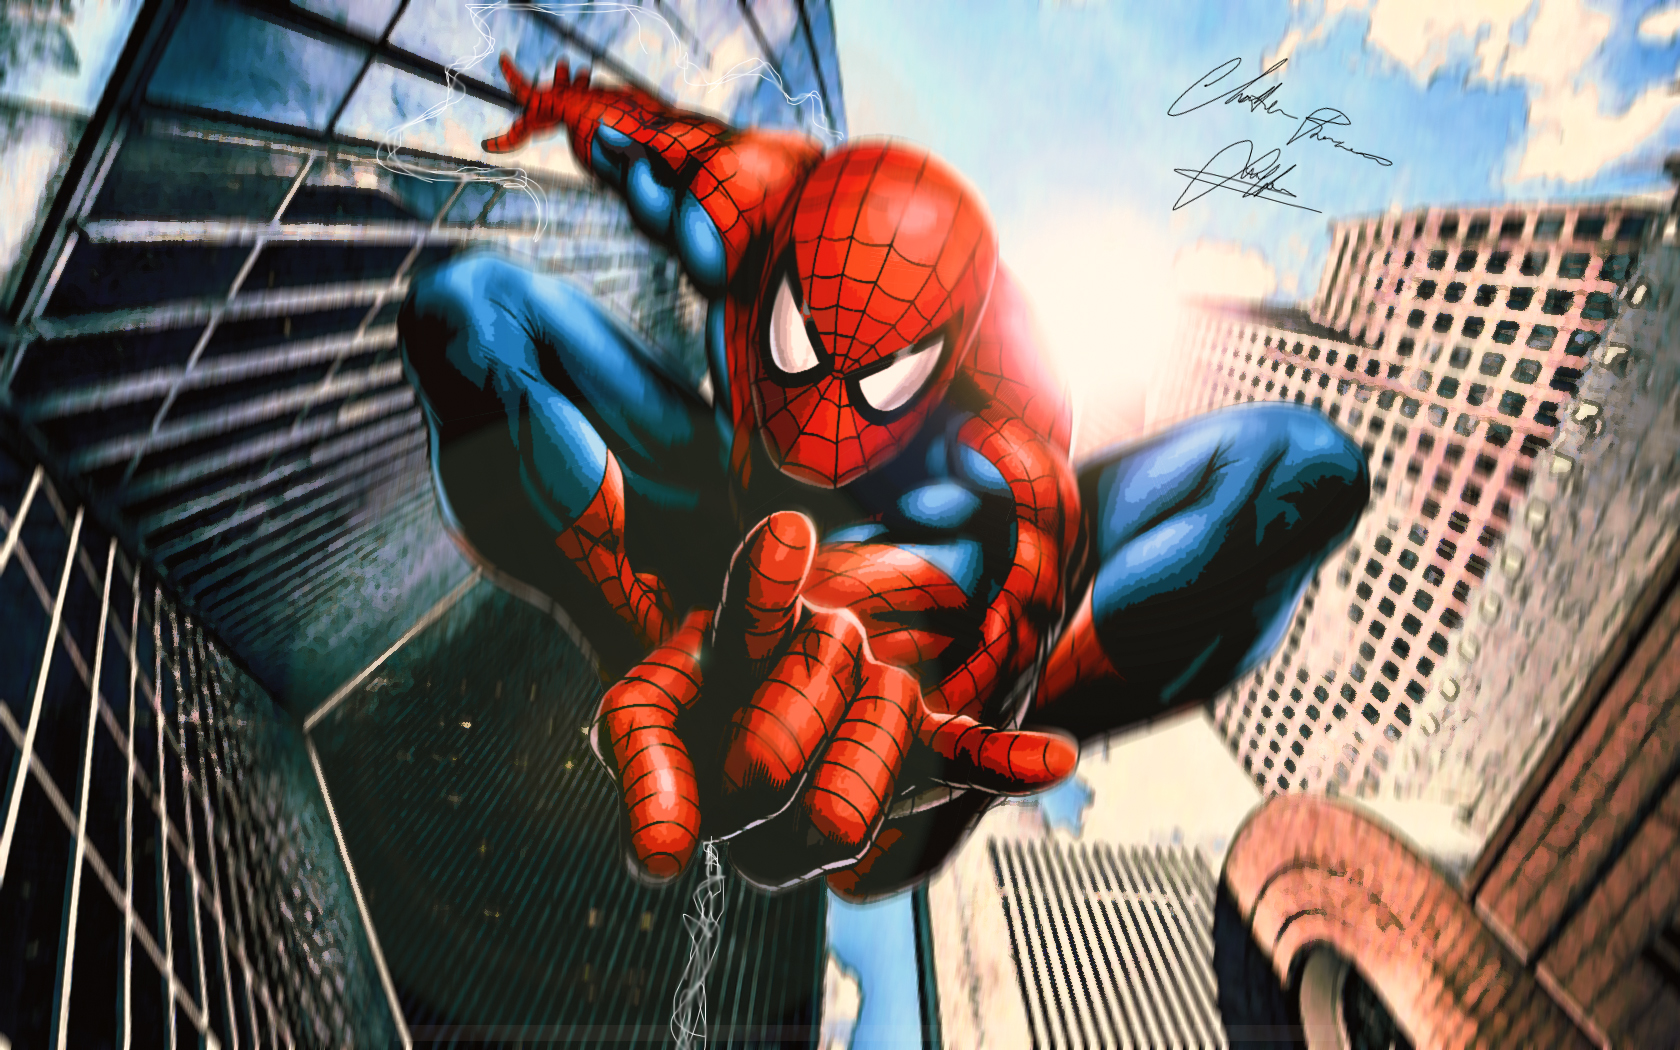 fond d'écran comique spiderman,homme araignée,super héros,personnage fictif,fiction,des bandes dessinées